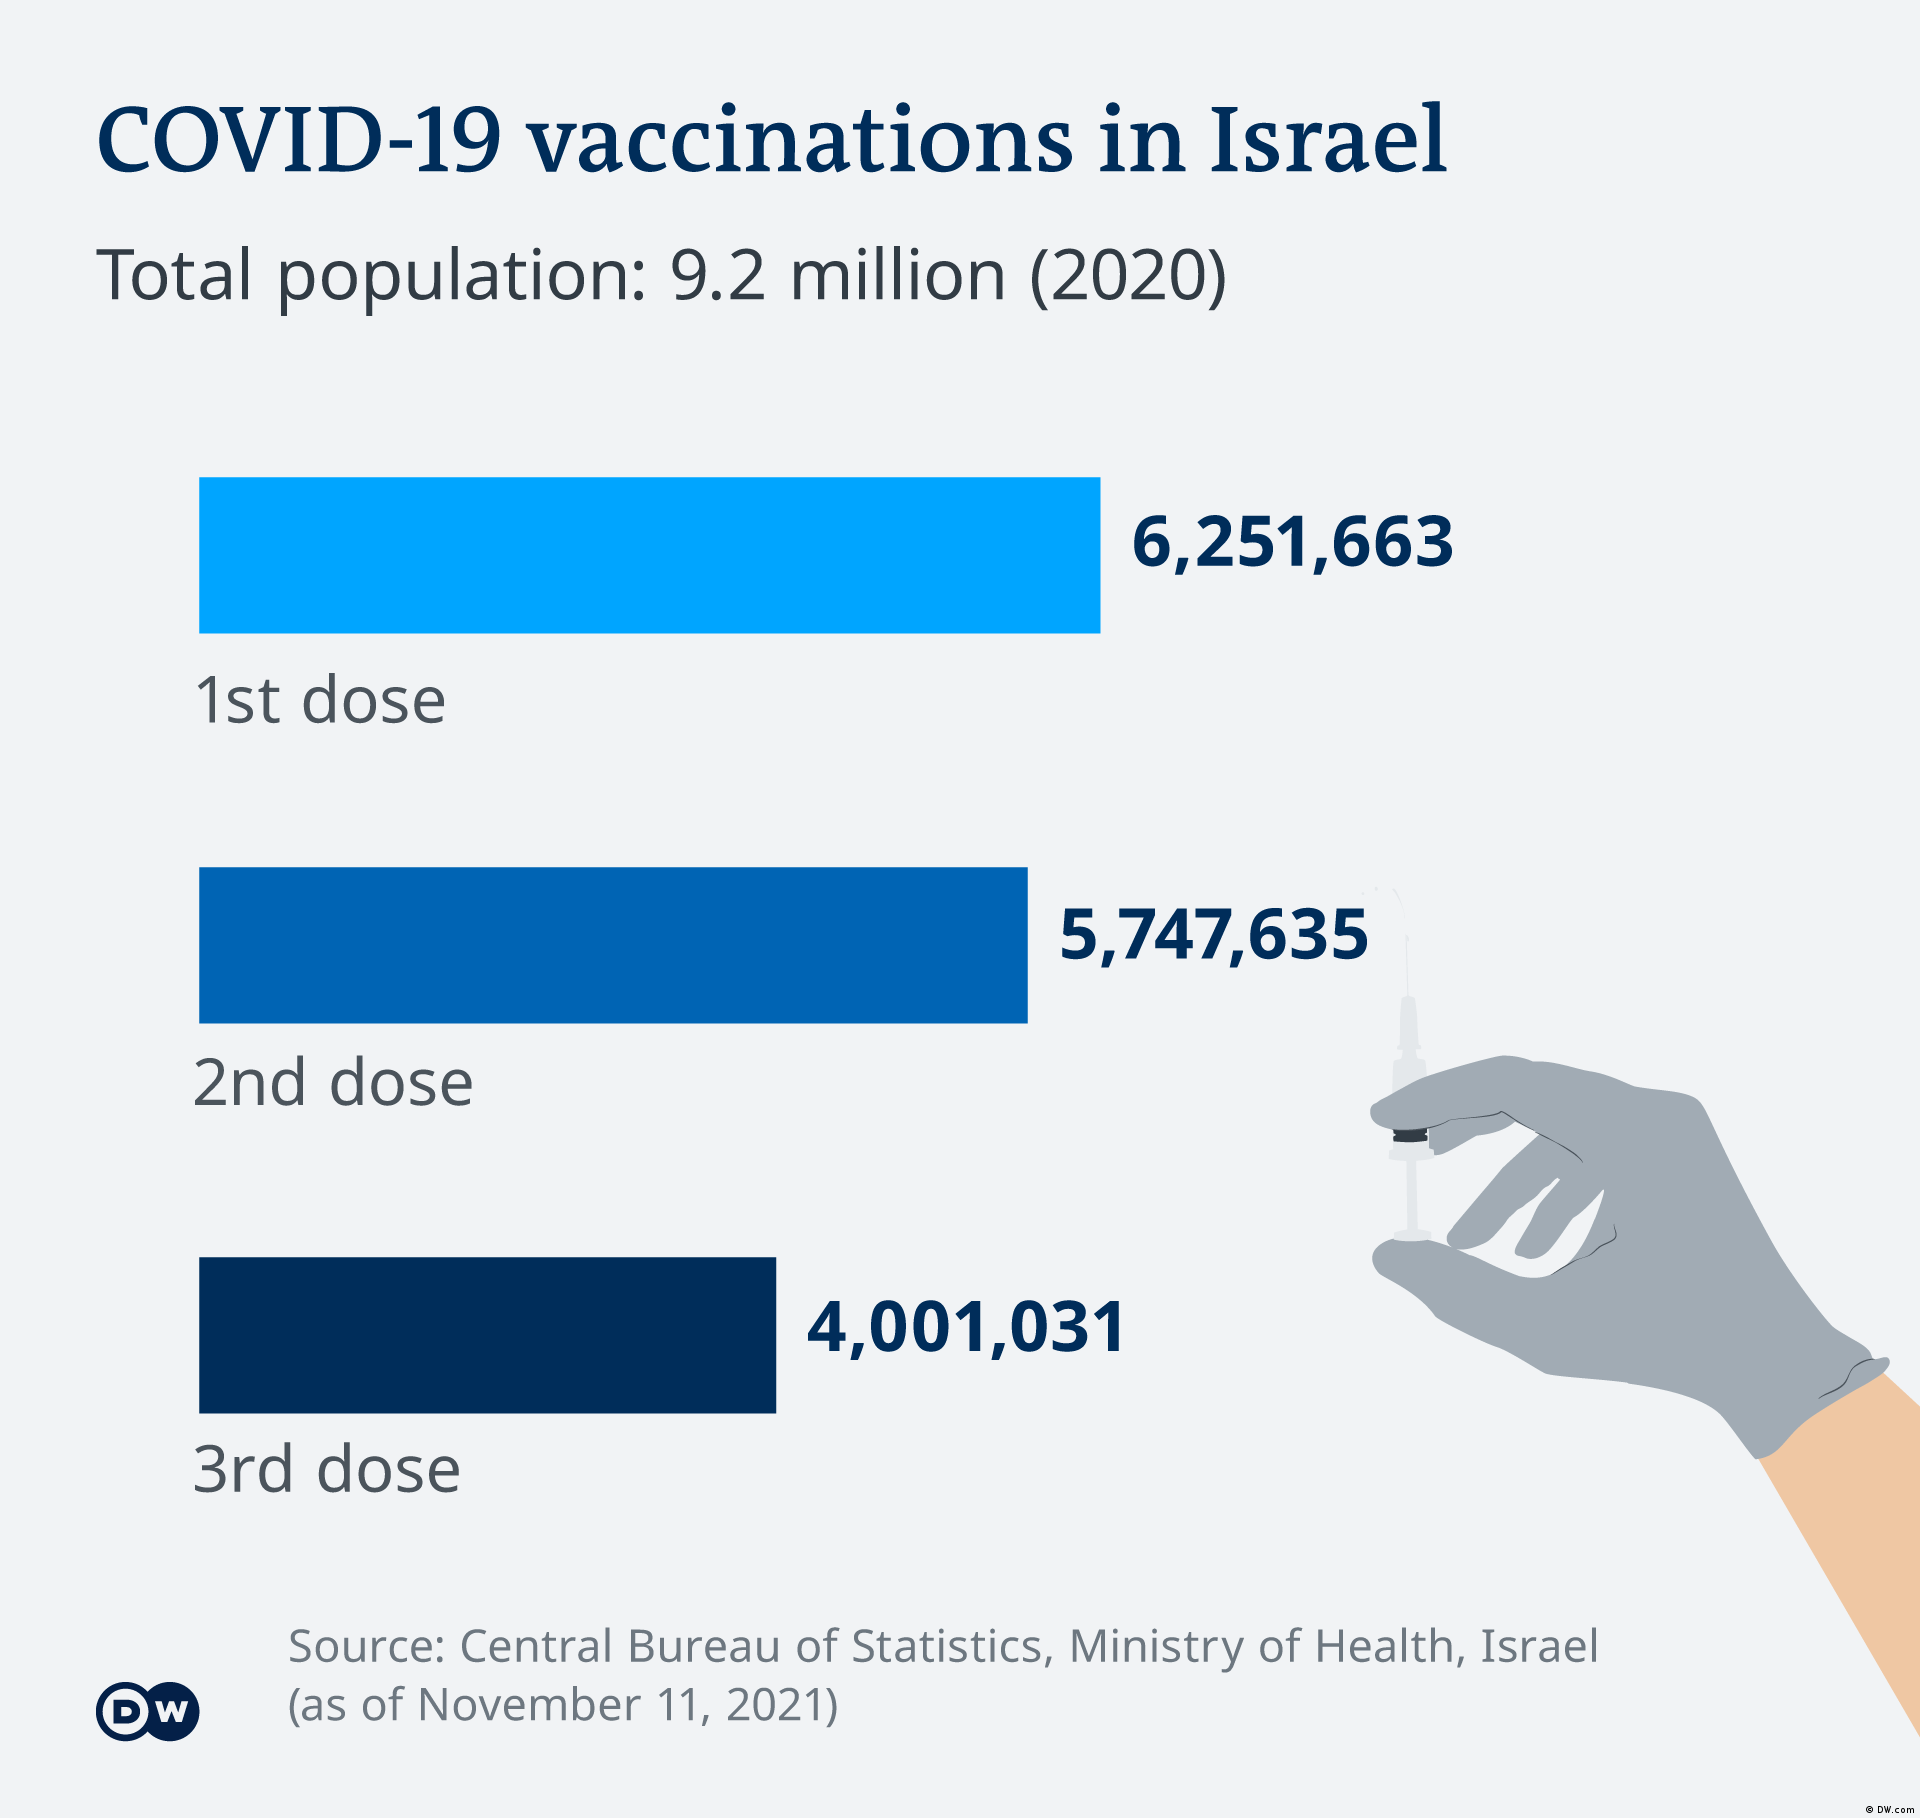 3rd dose of covid vaccine